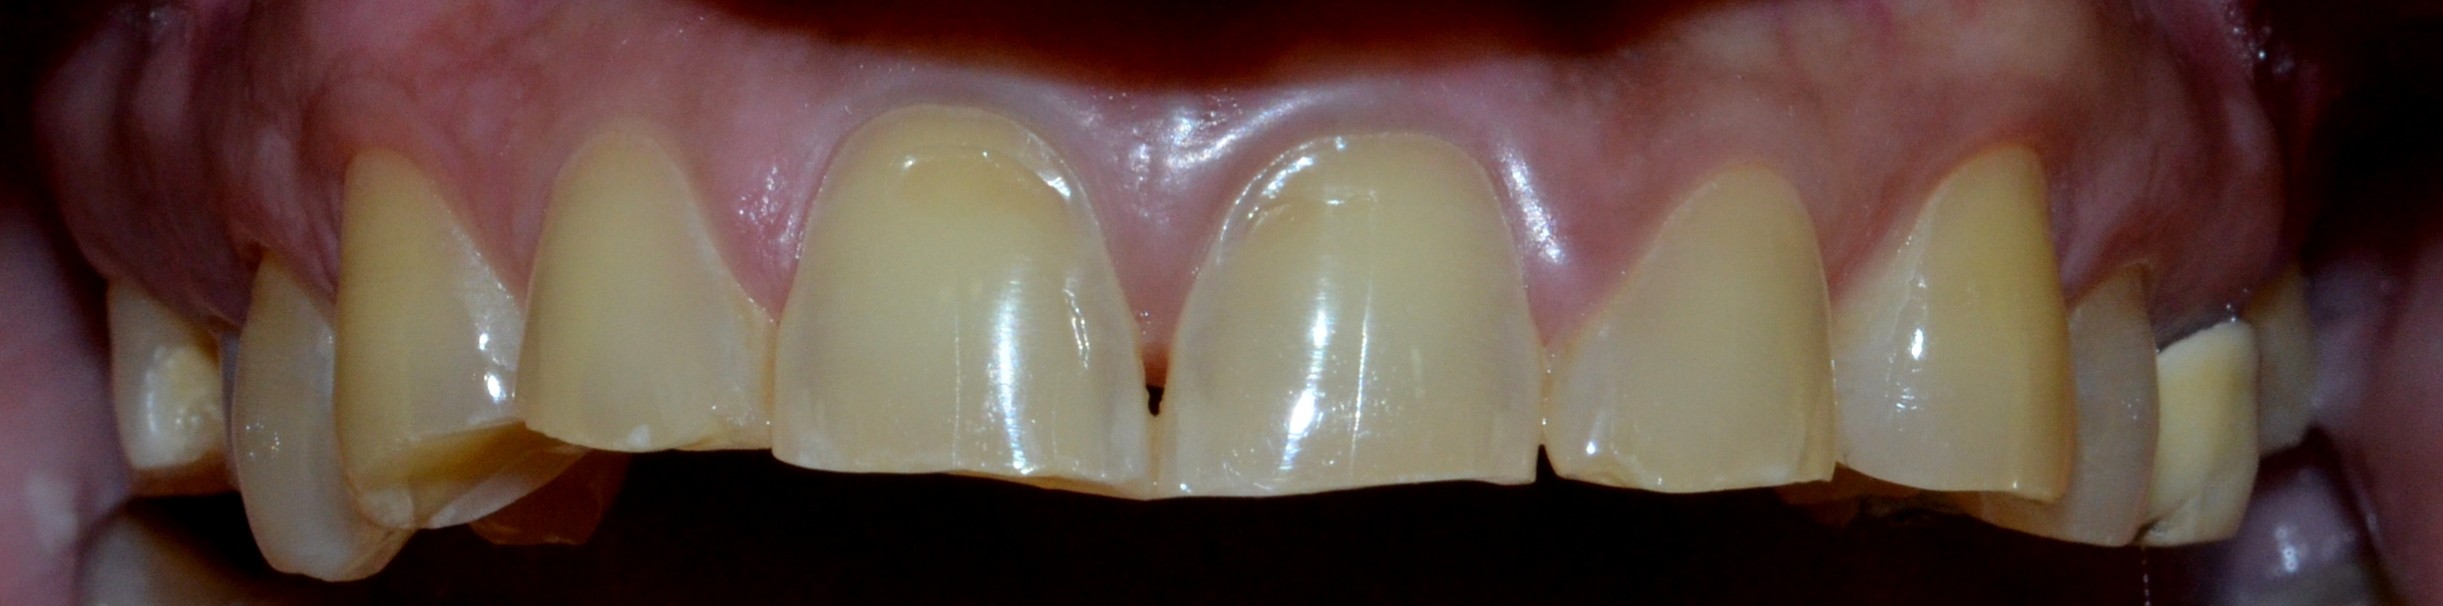 Before (upper teeth)